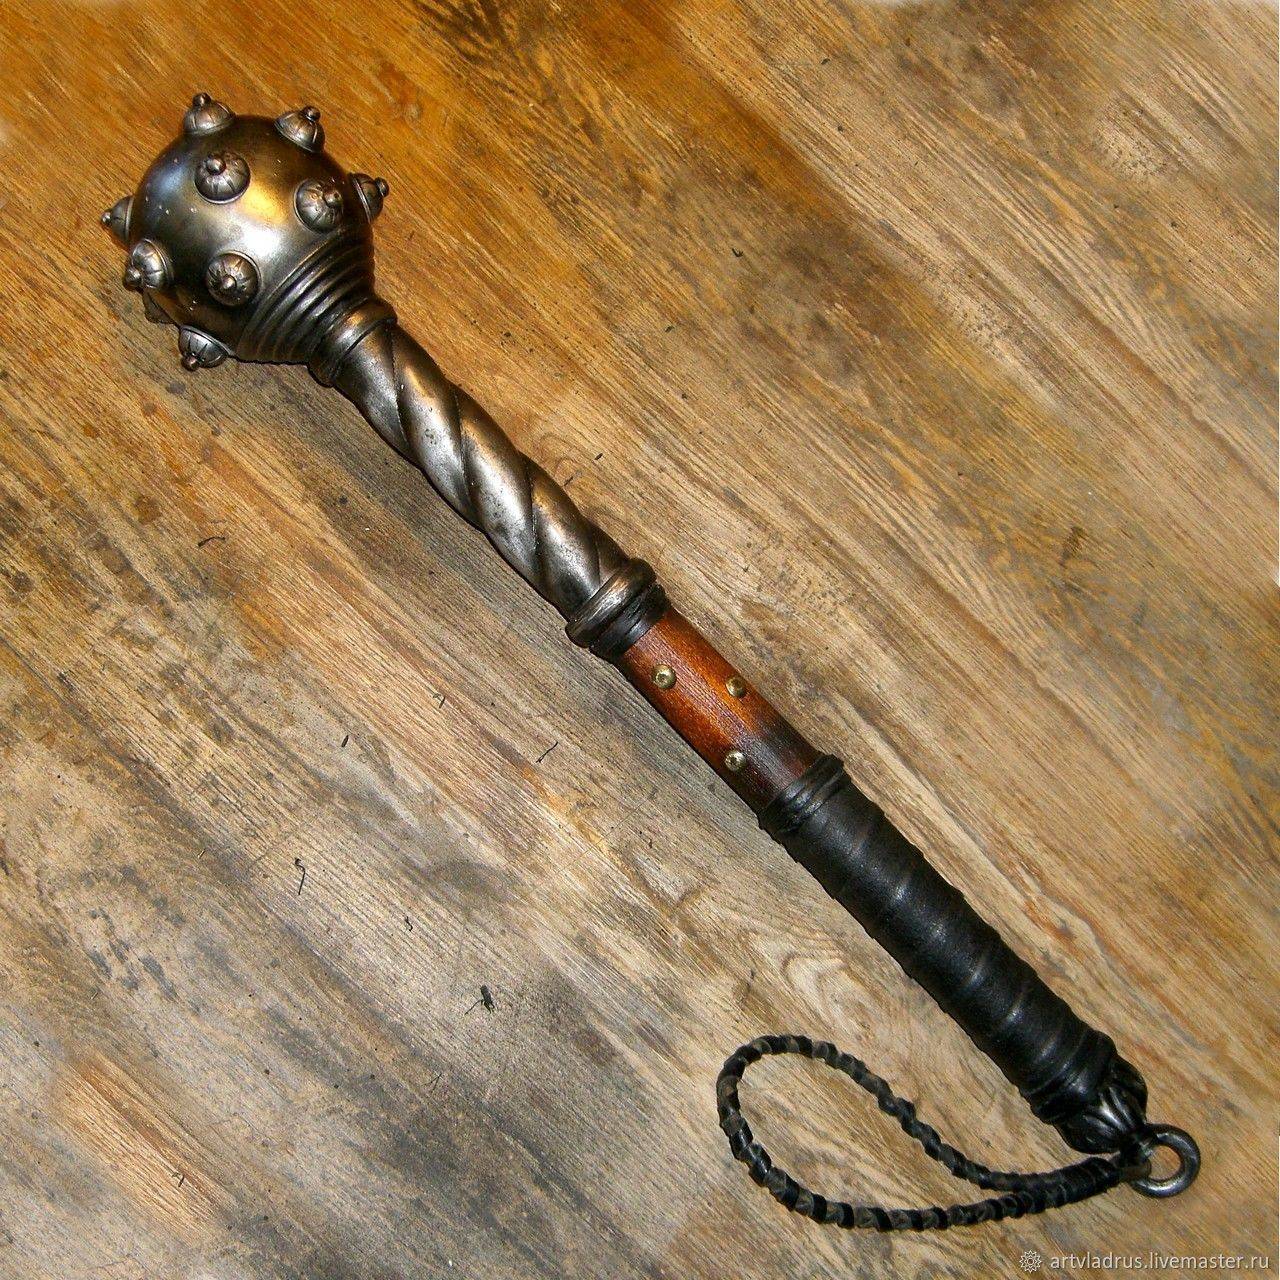 Палица - боевая дубина, холодное оружие древности, виды и характеристики, отличия от булавы, размеры и масса, как применялась и использовалась